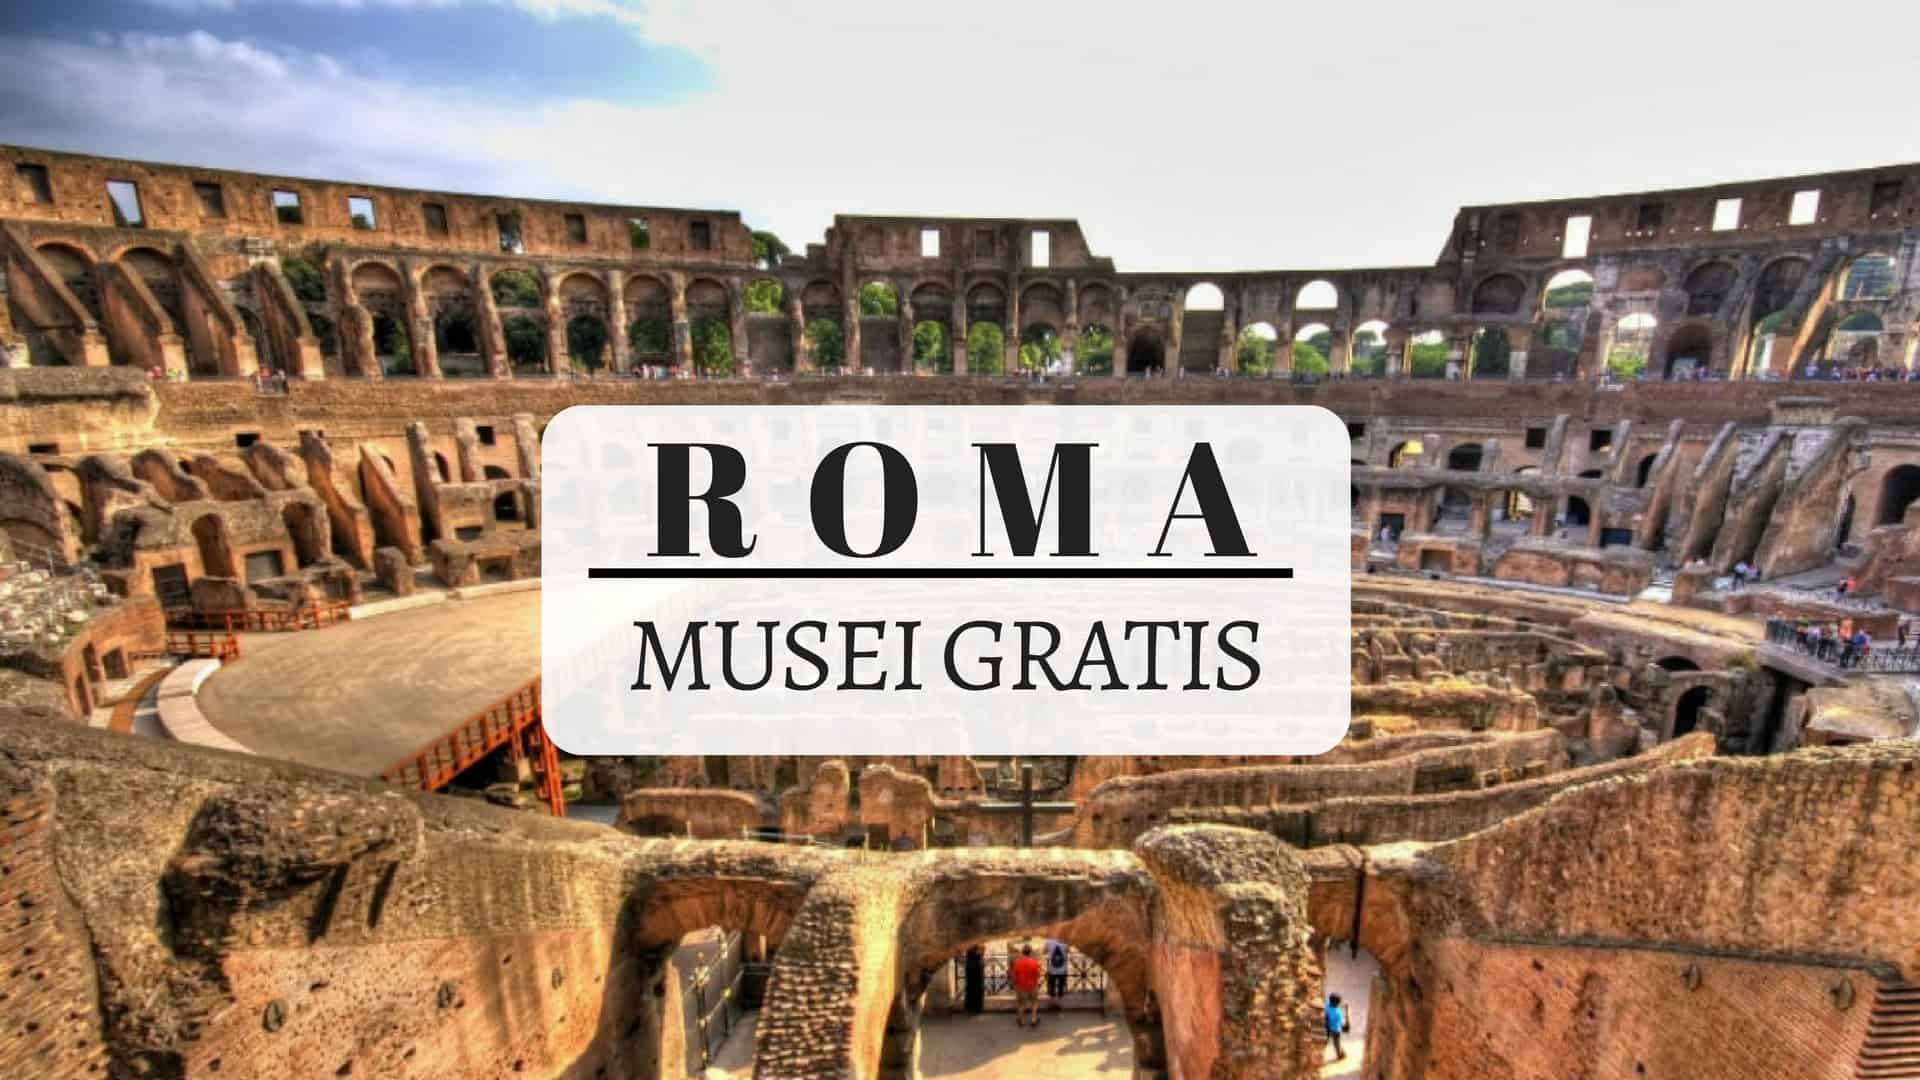 roma musei gratis domani